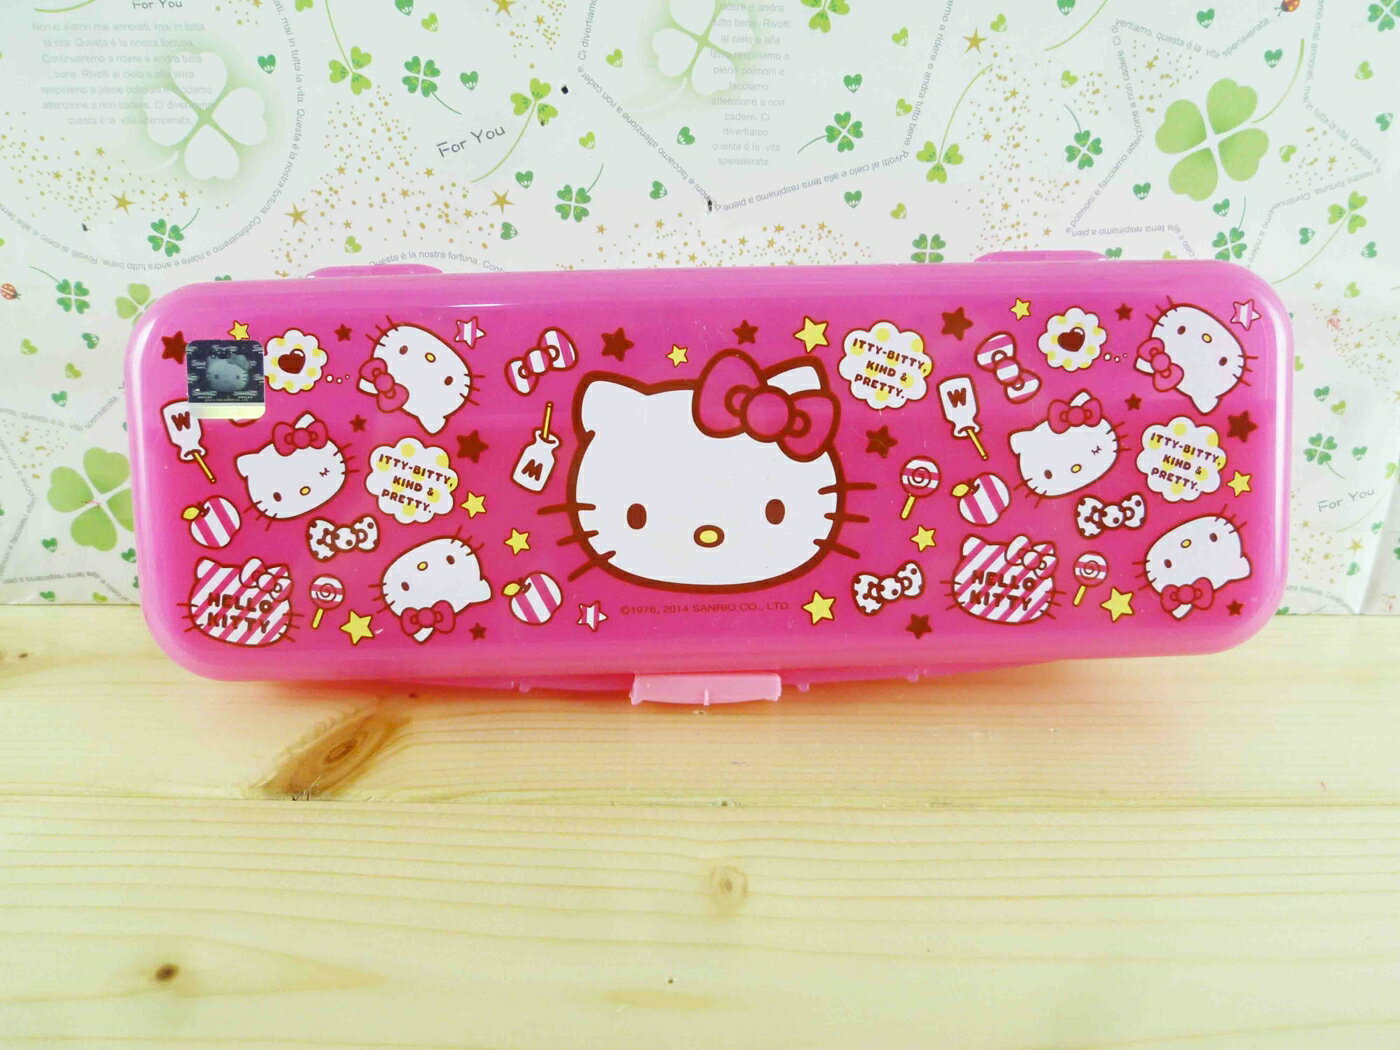 【震撼精品百貨】Hello Kitty 凱蒂貓 KITTY鉛筆盒-滿版圖案-桃色 震撼日式精品百貨